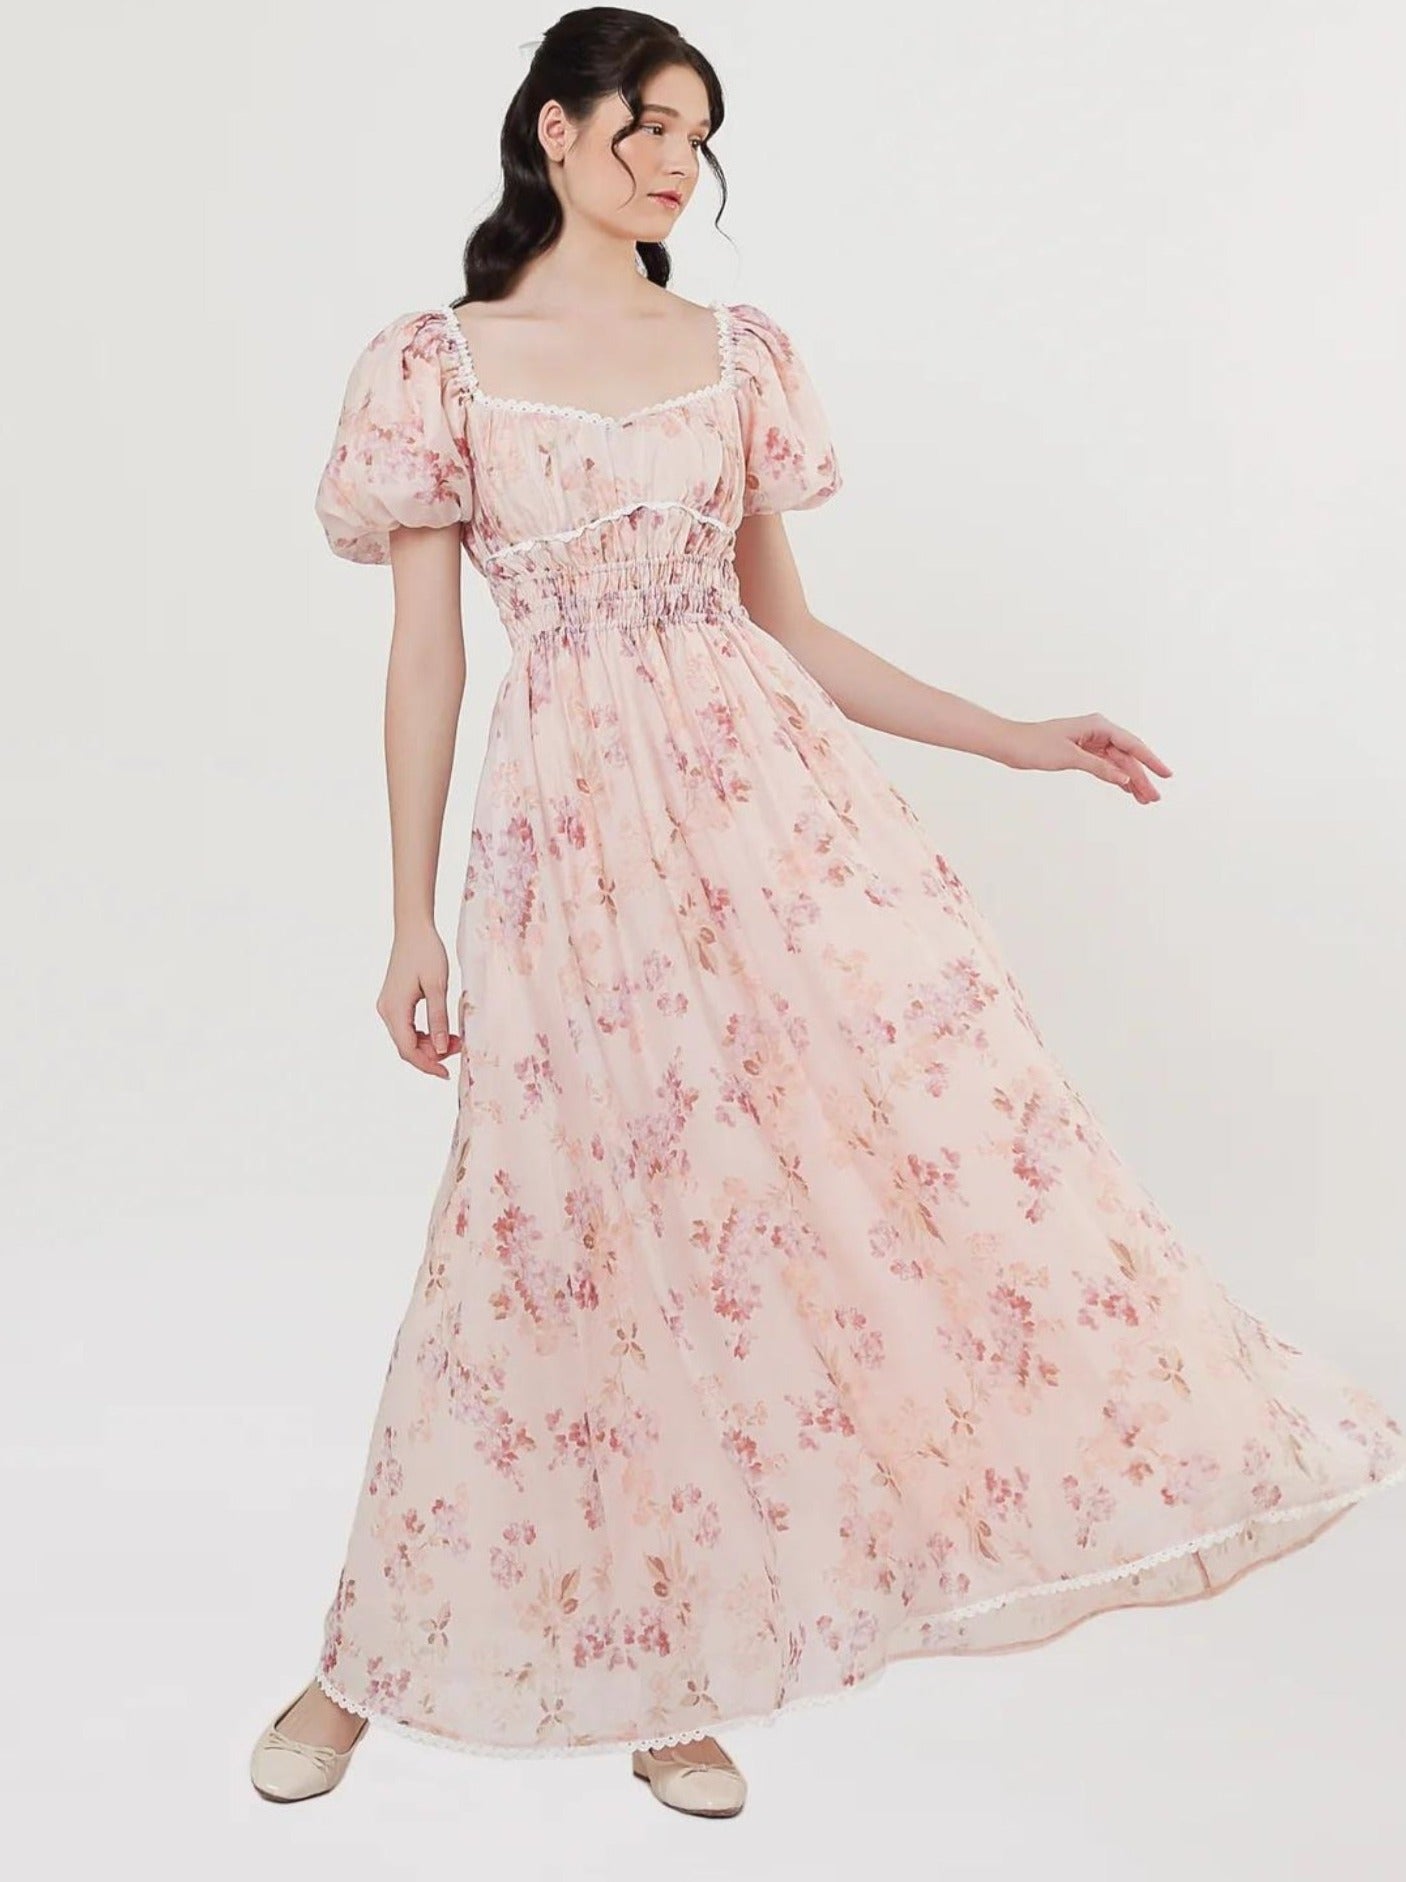 Isabella Dress in Floral Pink (3 LEFT)